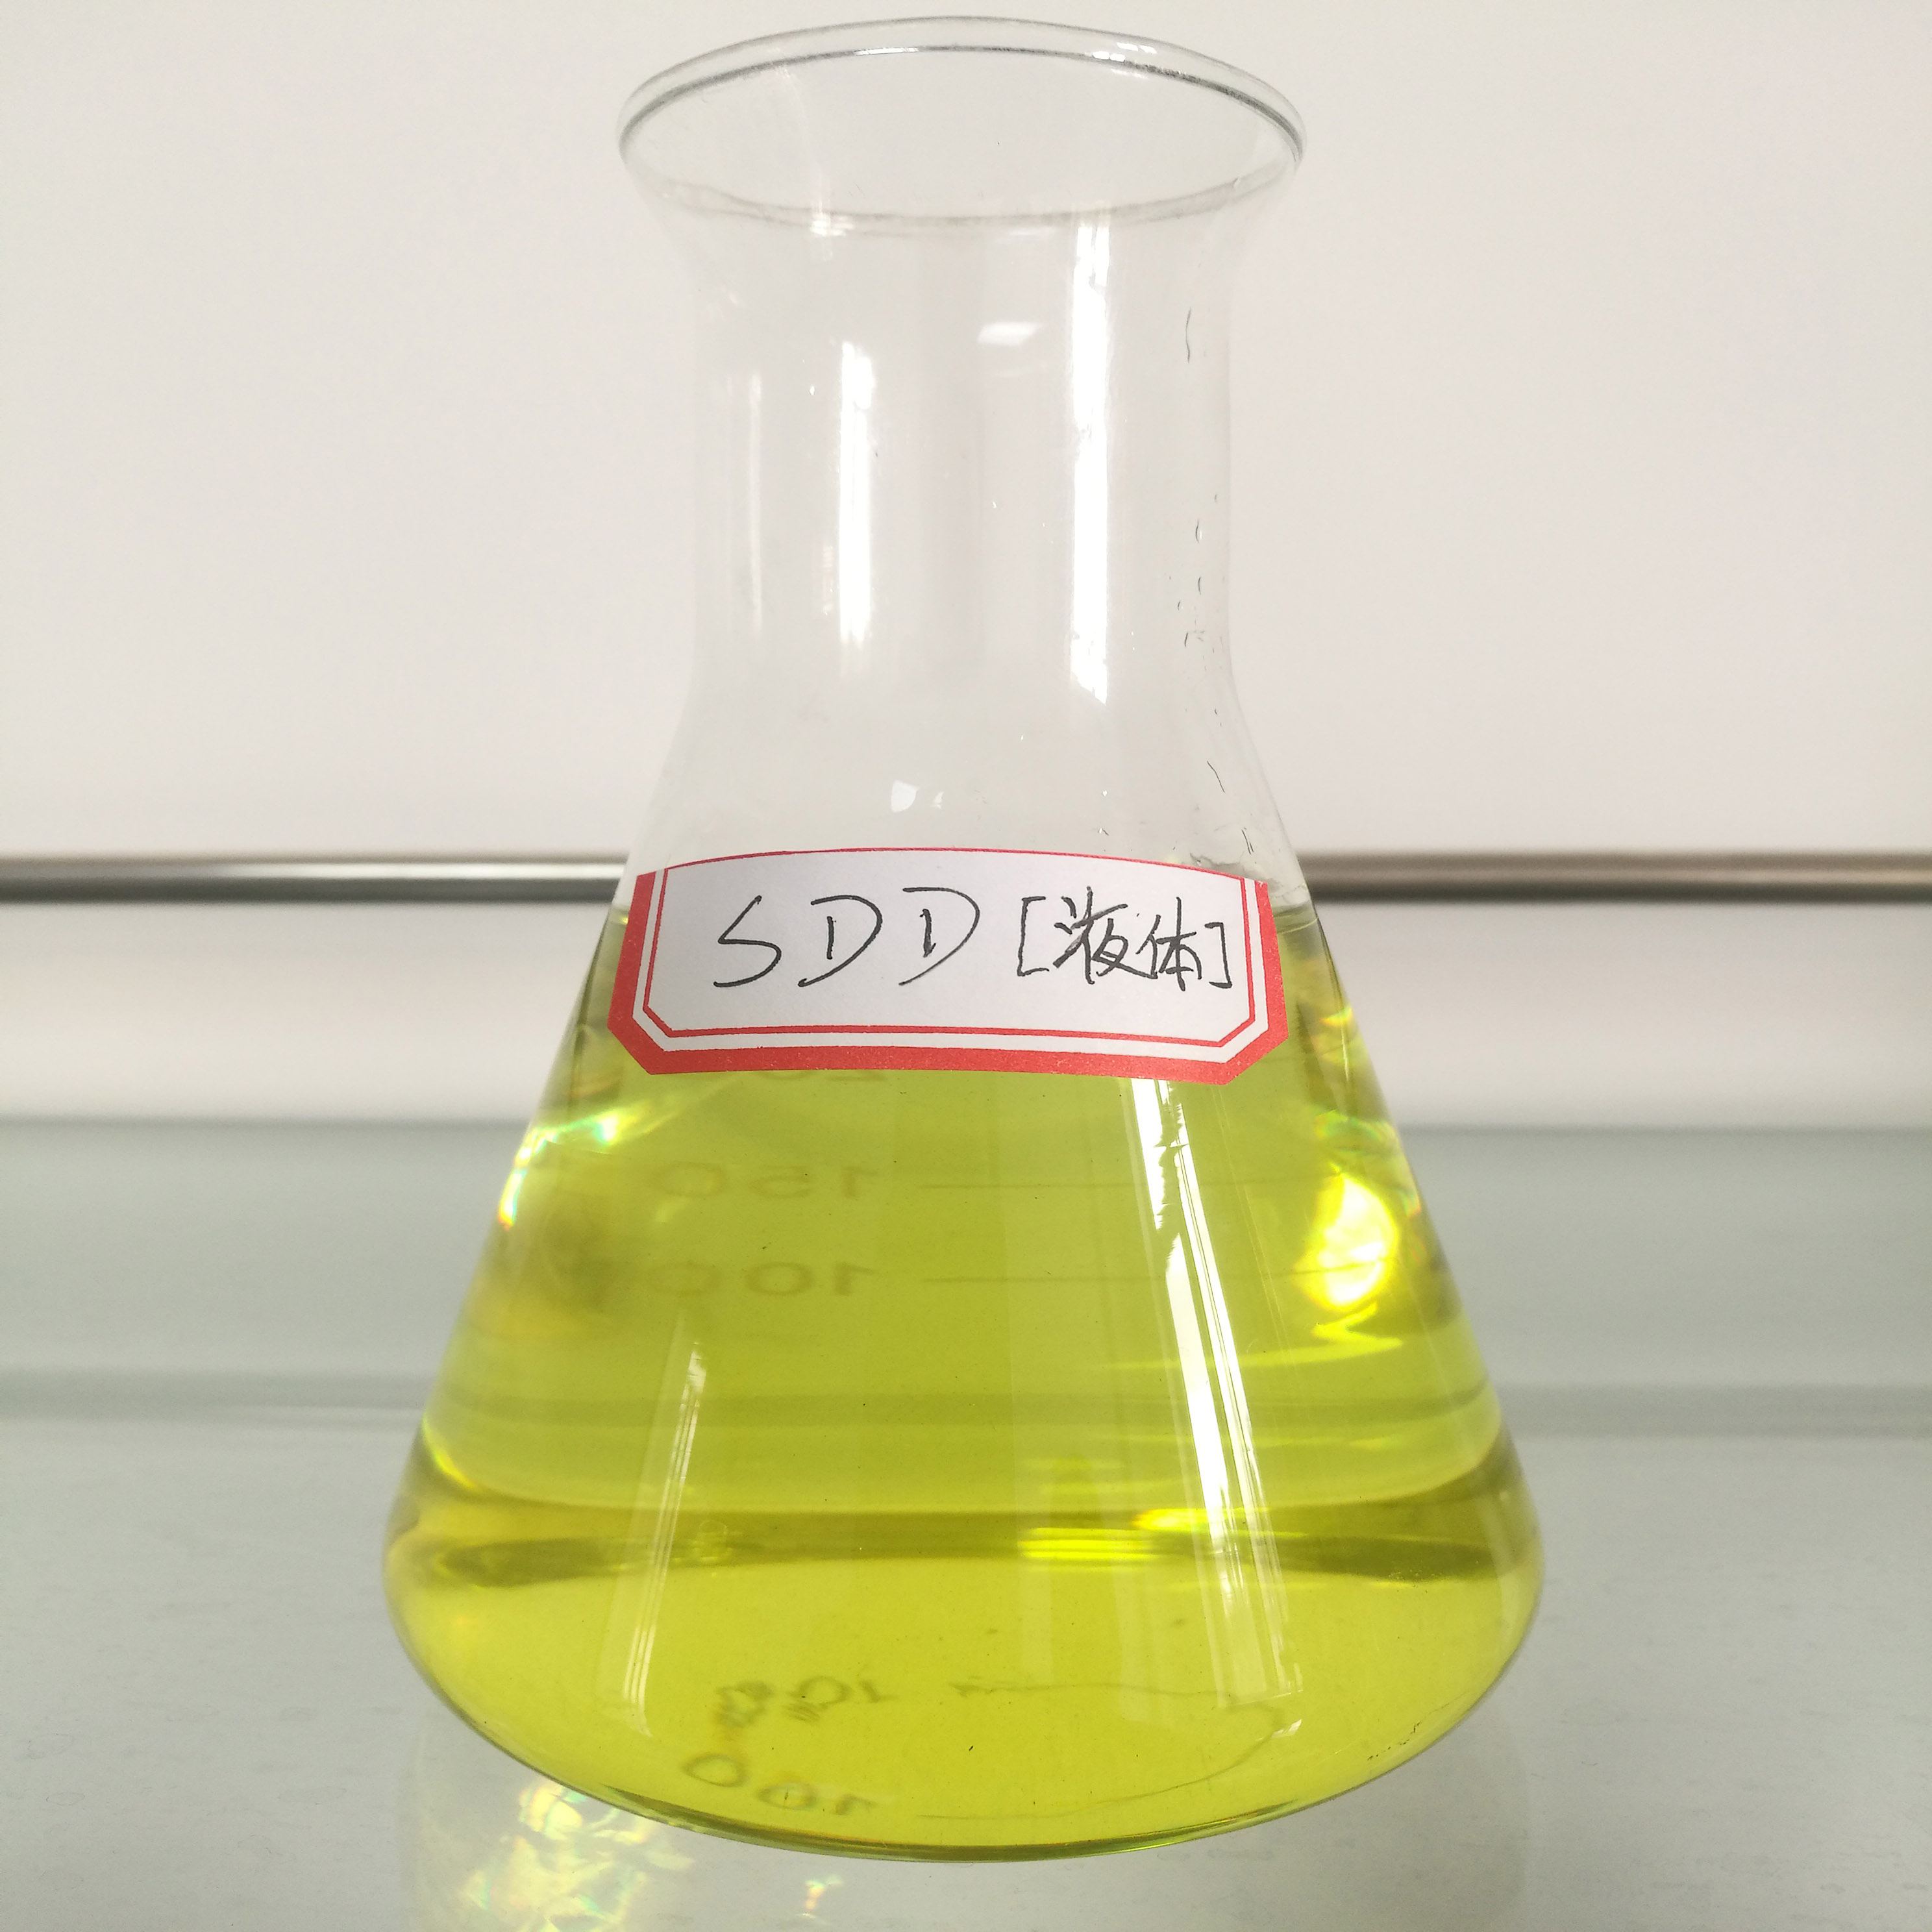 福美钠(SDD)液体图片